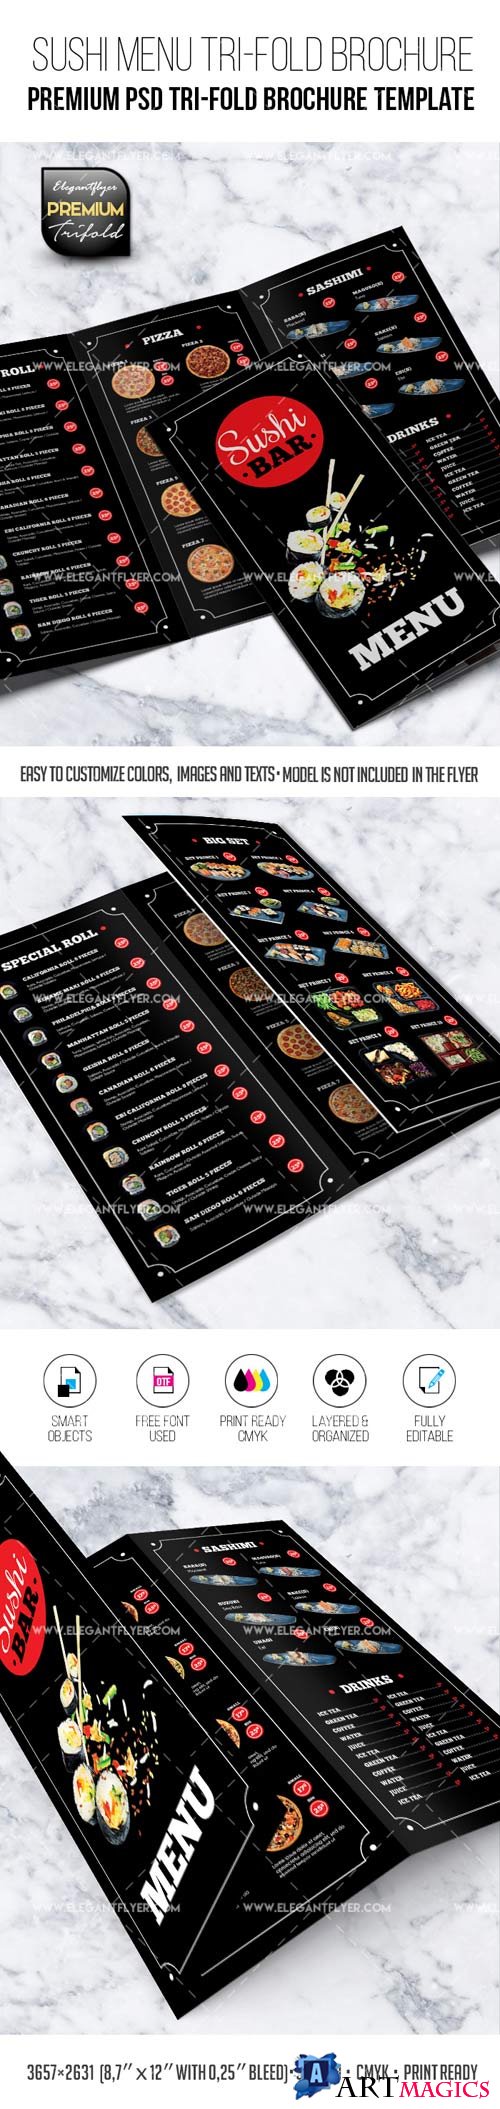 Sushi Restaurant Menu Premium PSD Tri-Fold Brochure Template